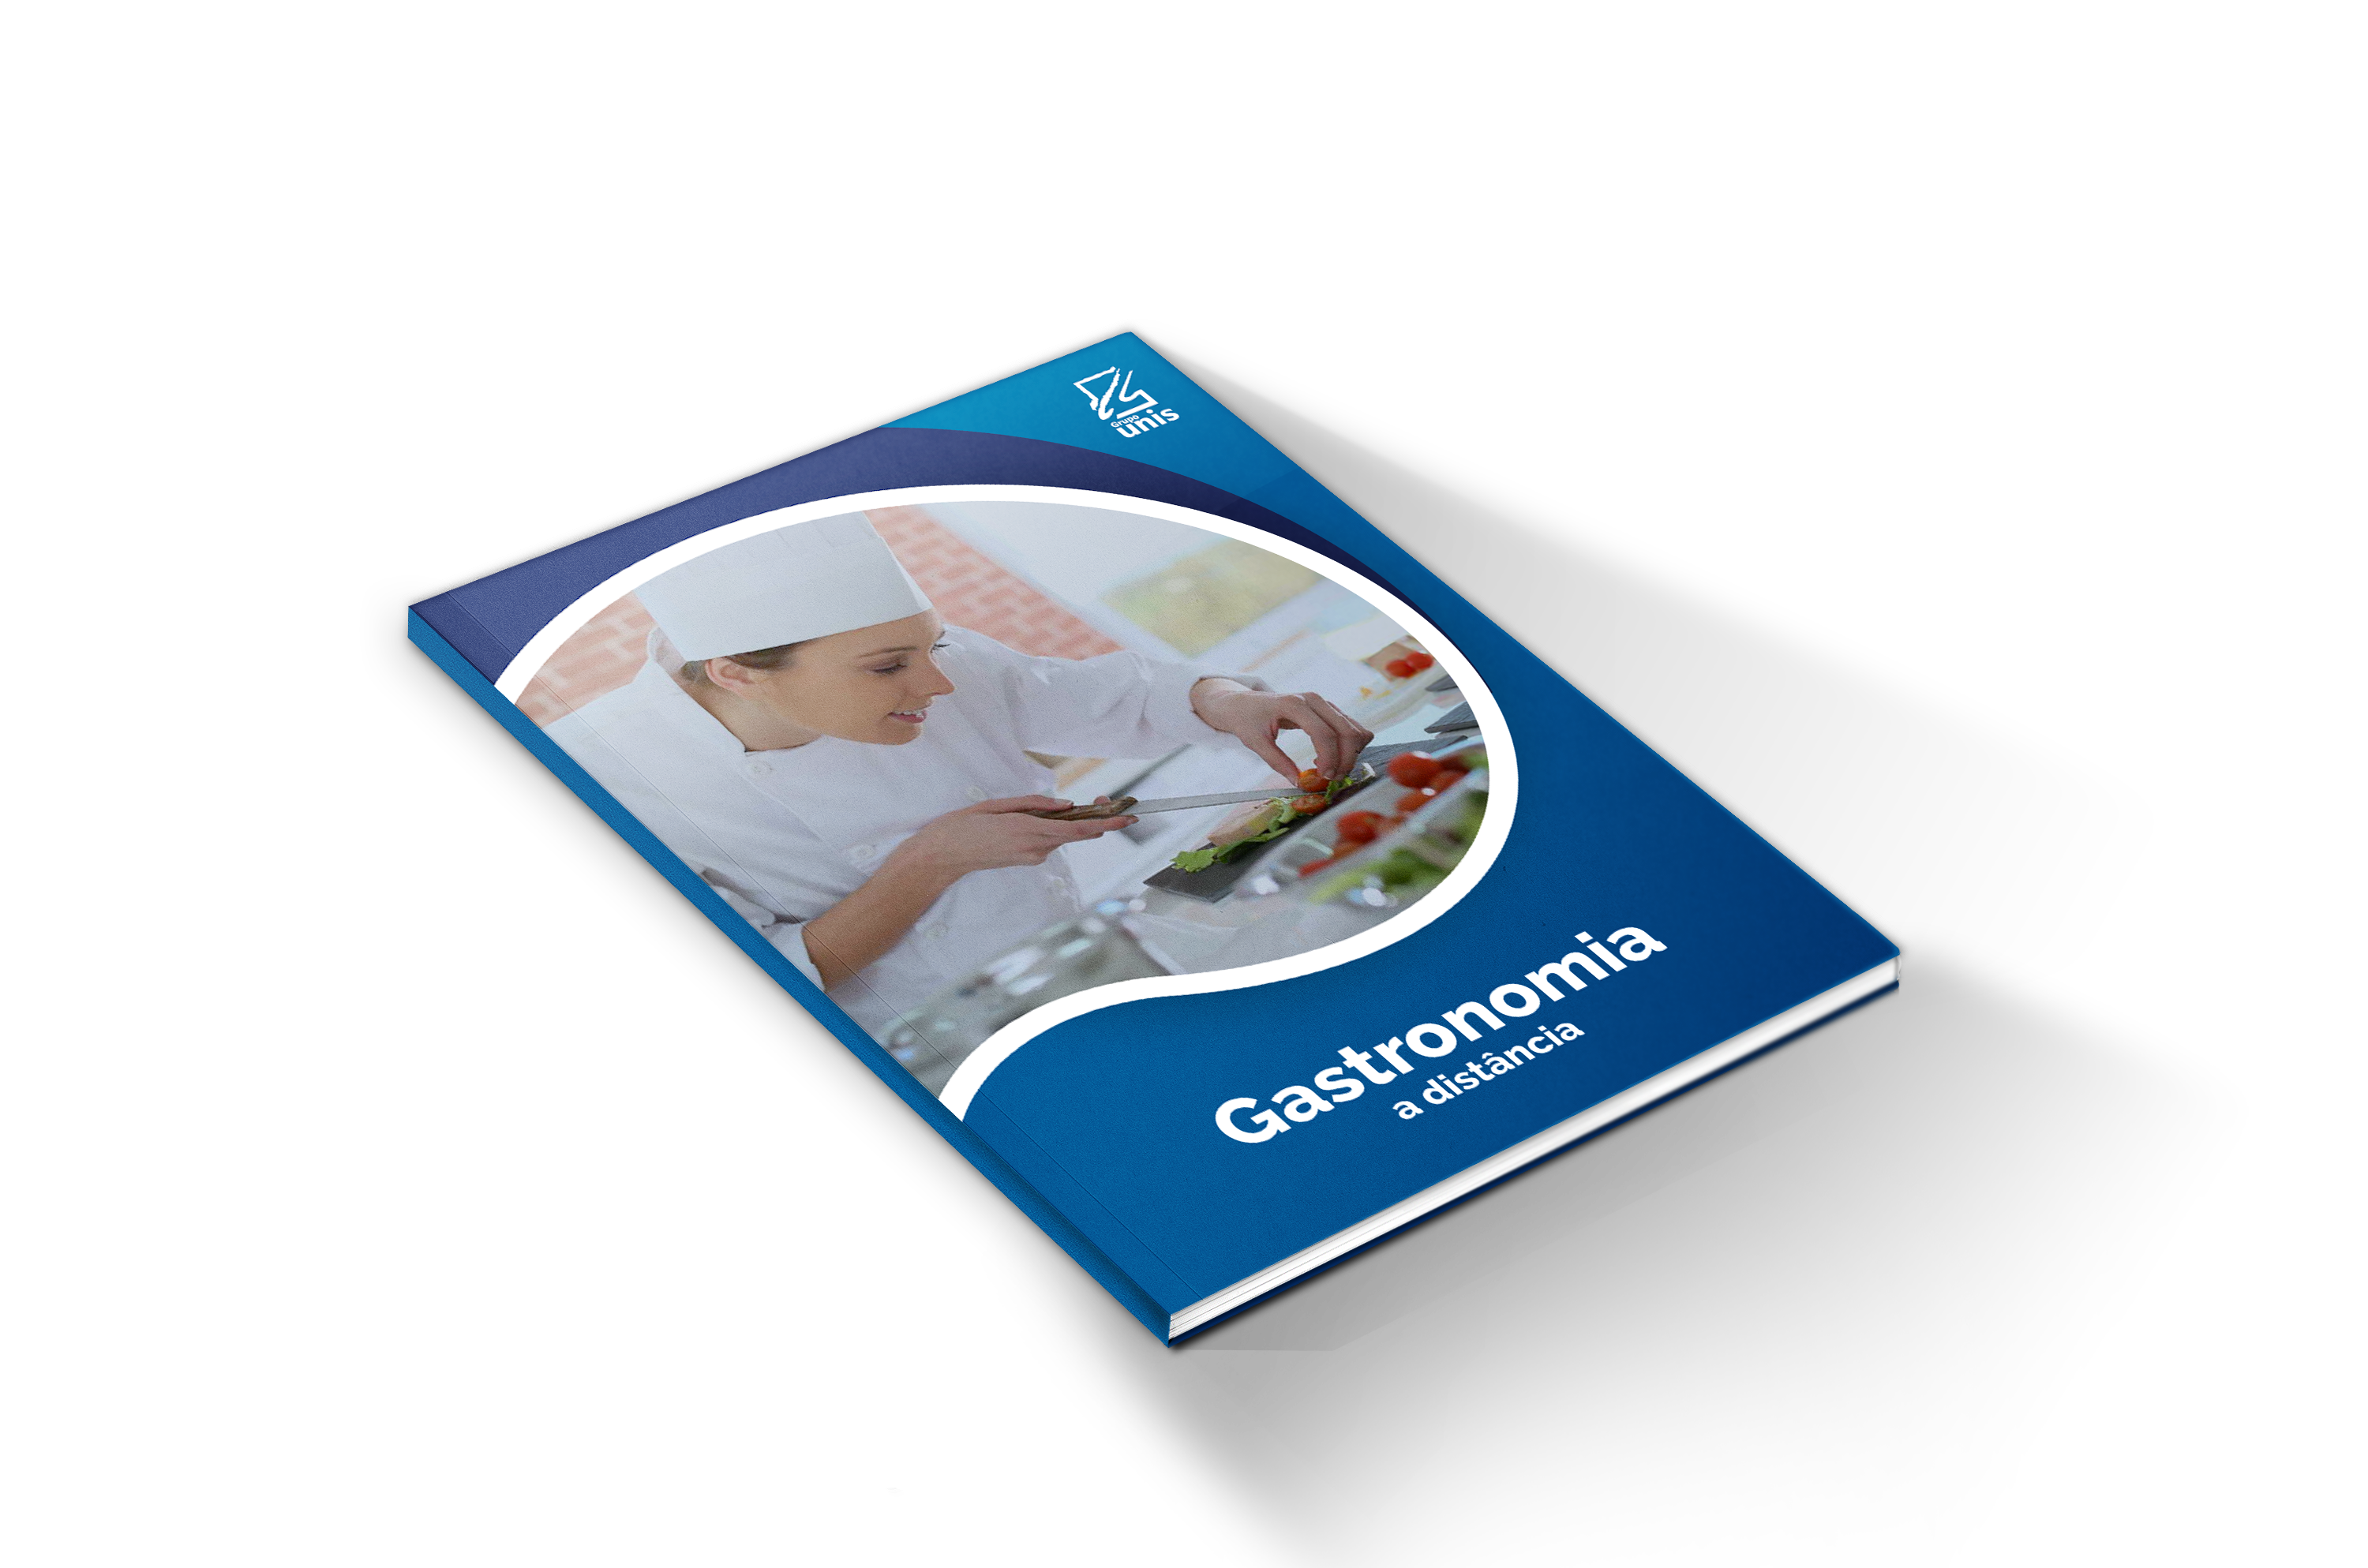 eBook de Gastronomia (EaD) do Unis